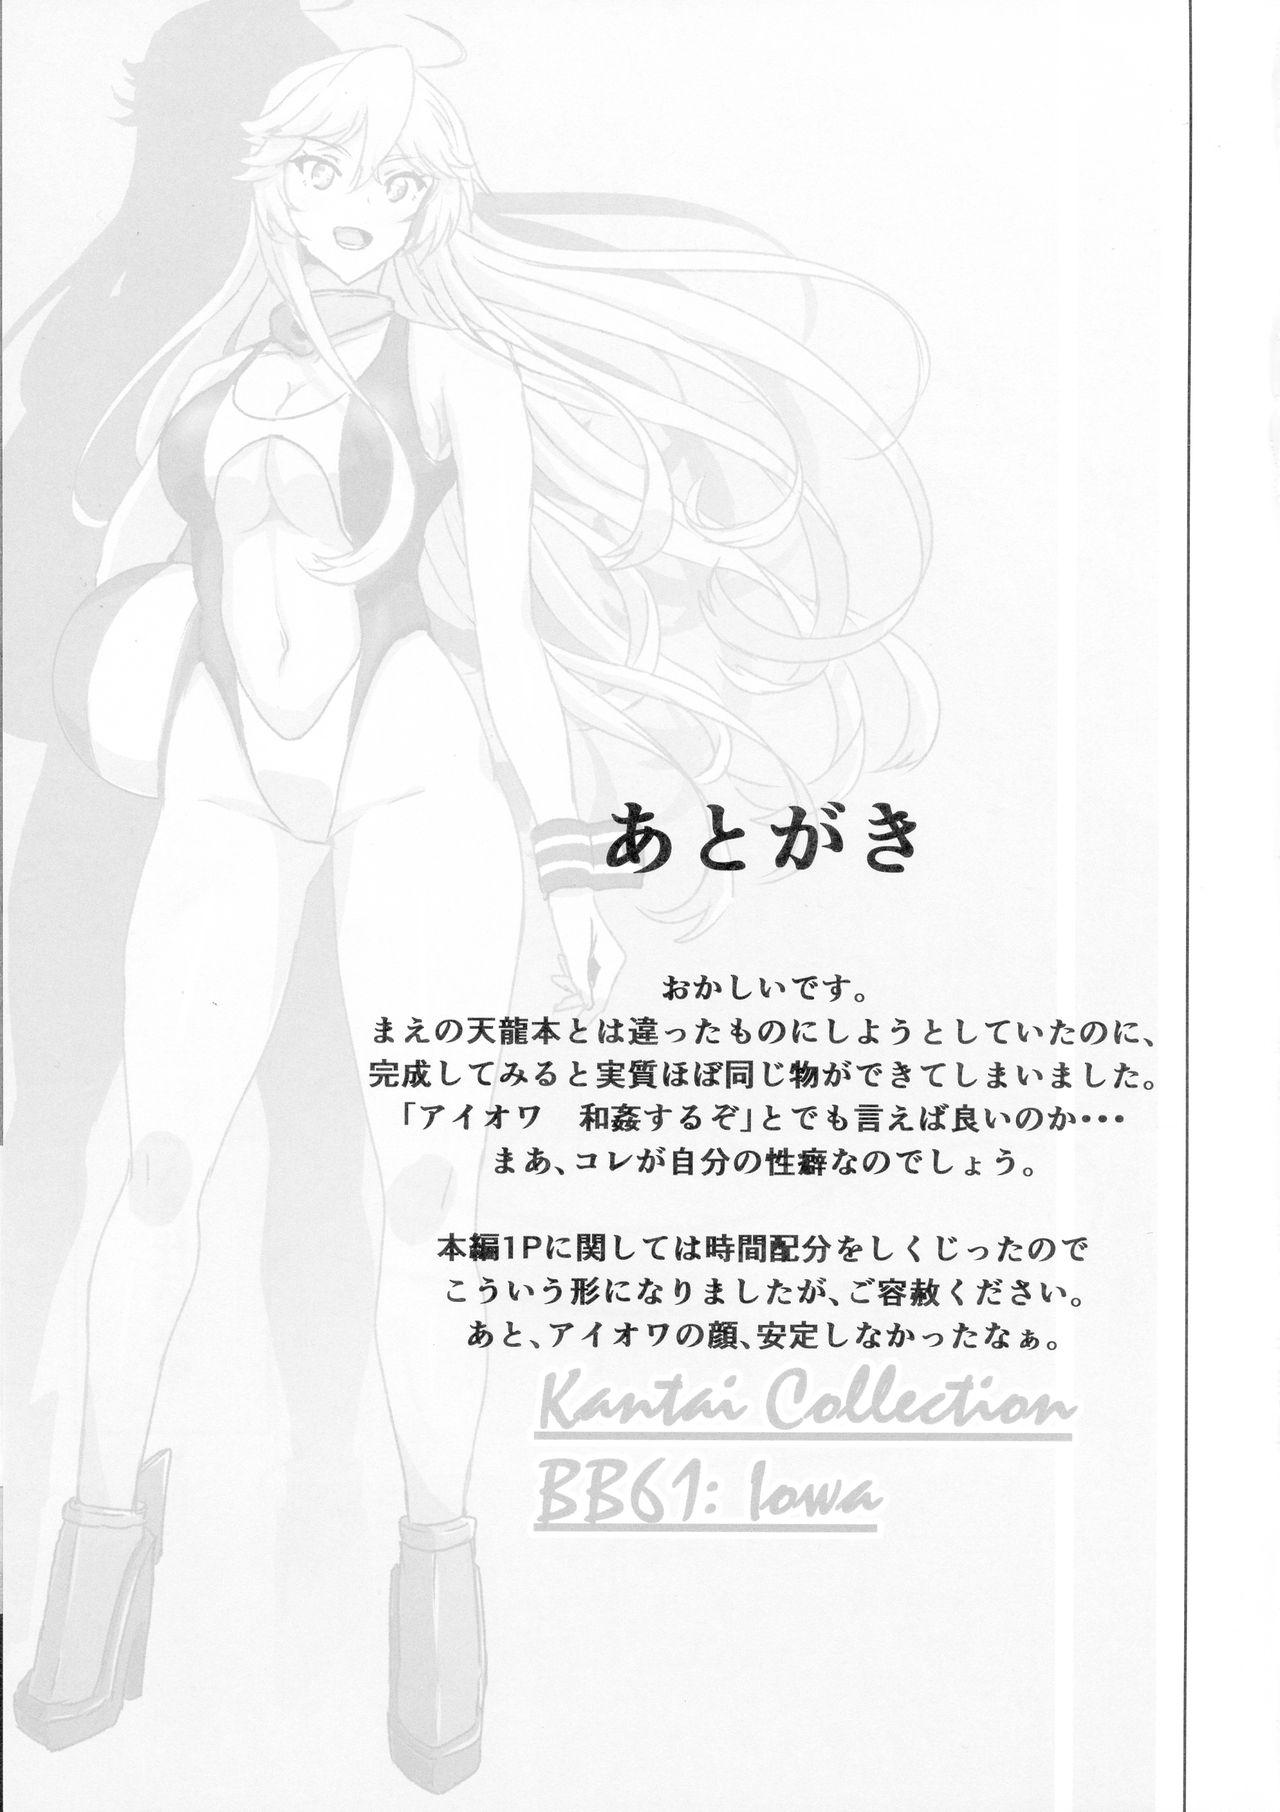 Amature Sex Iowa no Erohon - Iowa Hentai Manga - Kantai collection Free Blow Job Porn - Page 29